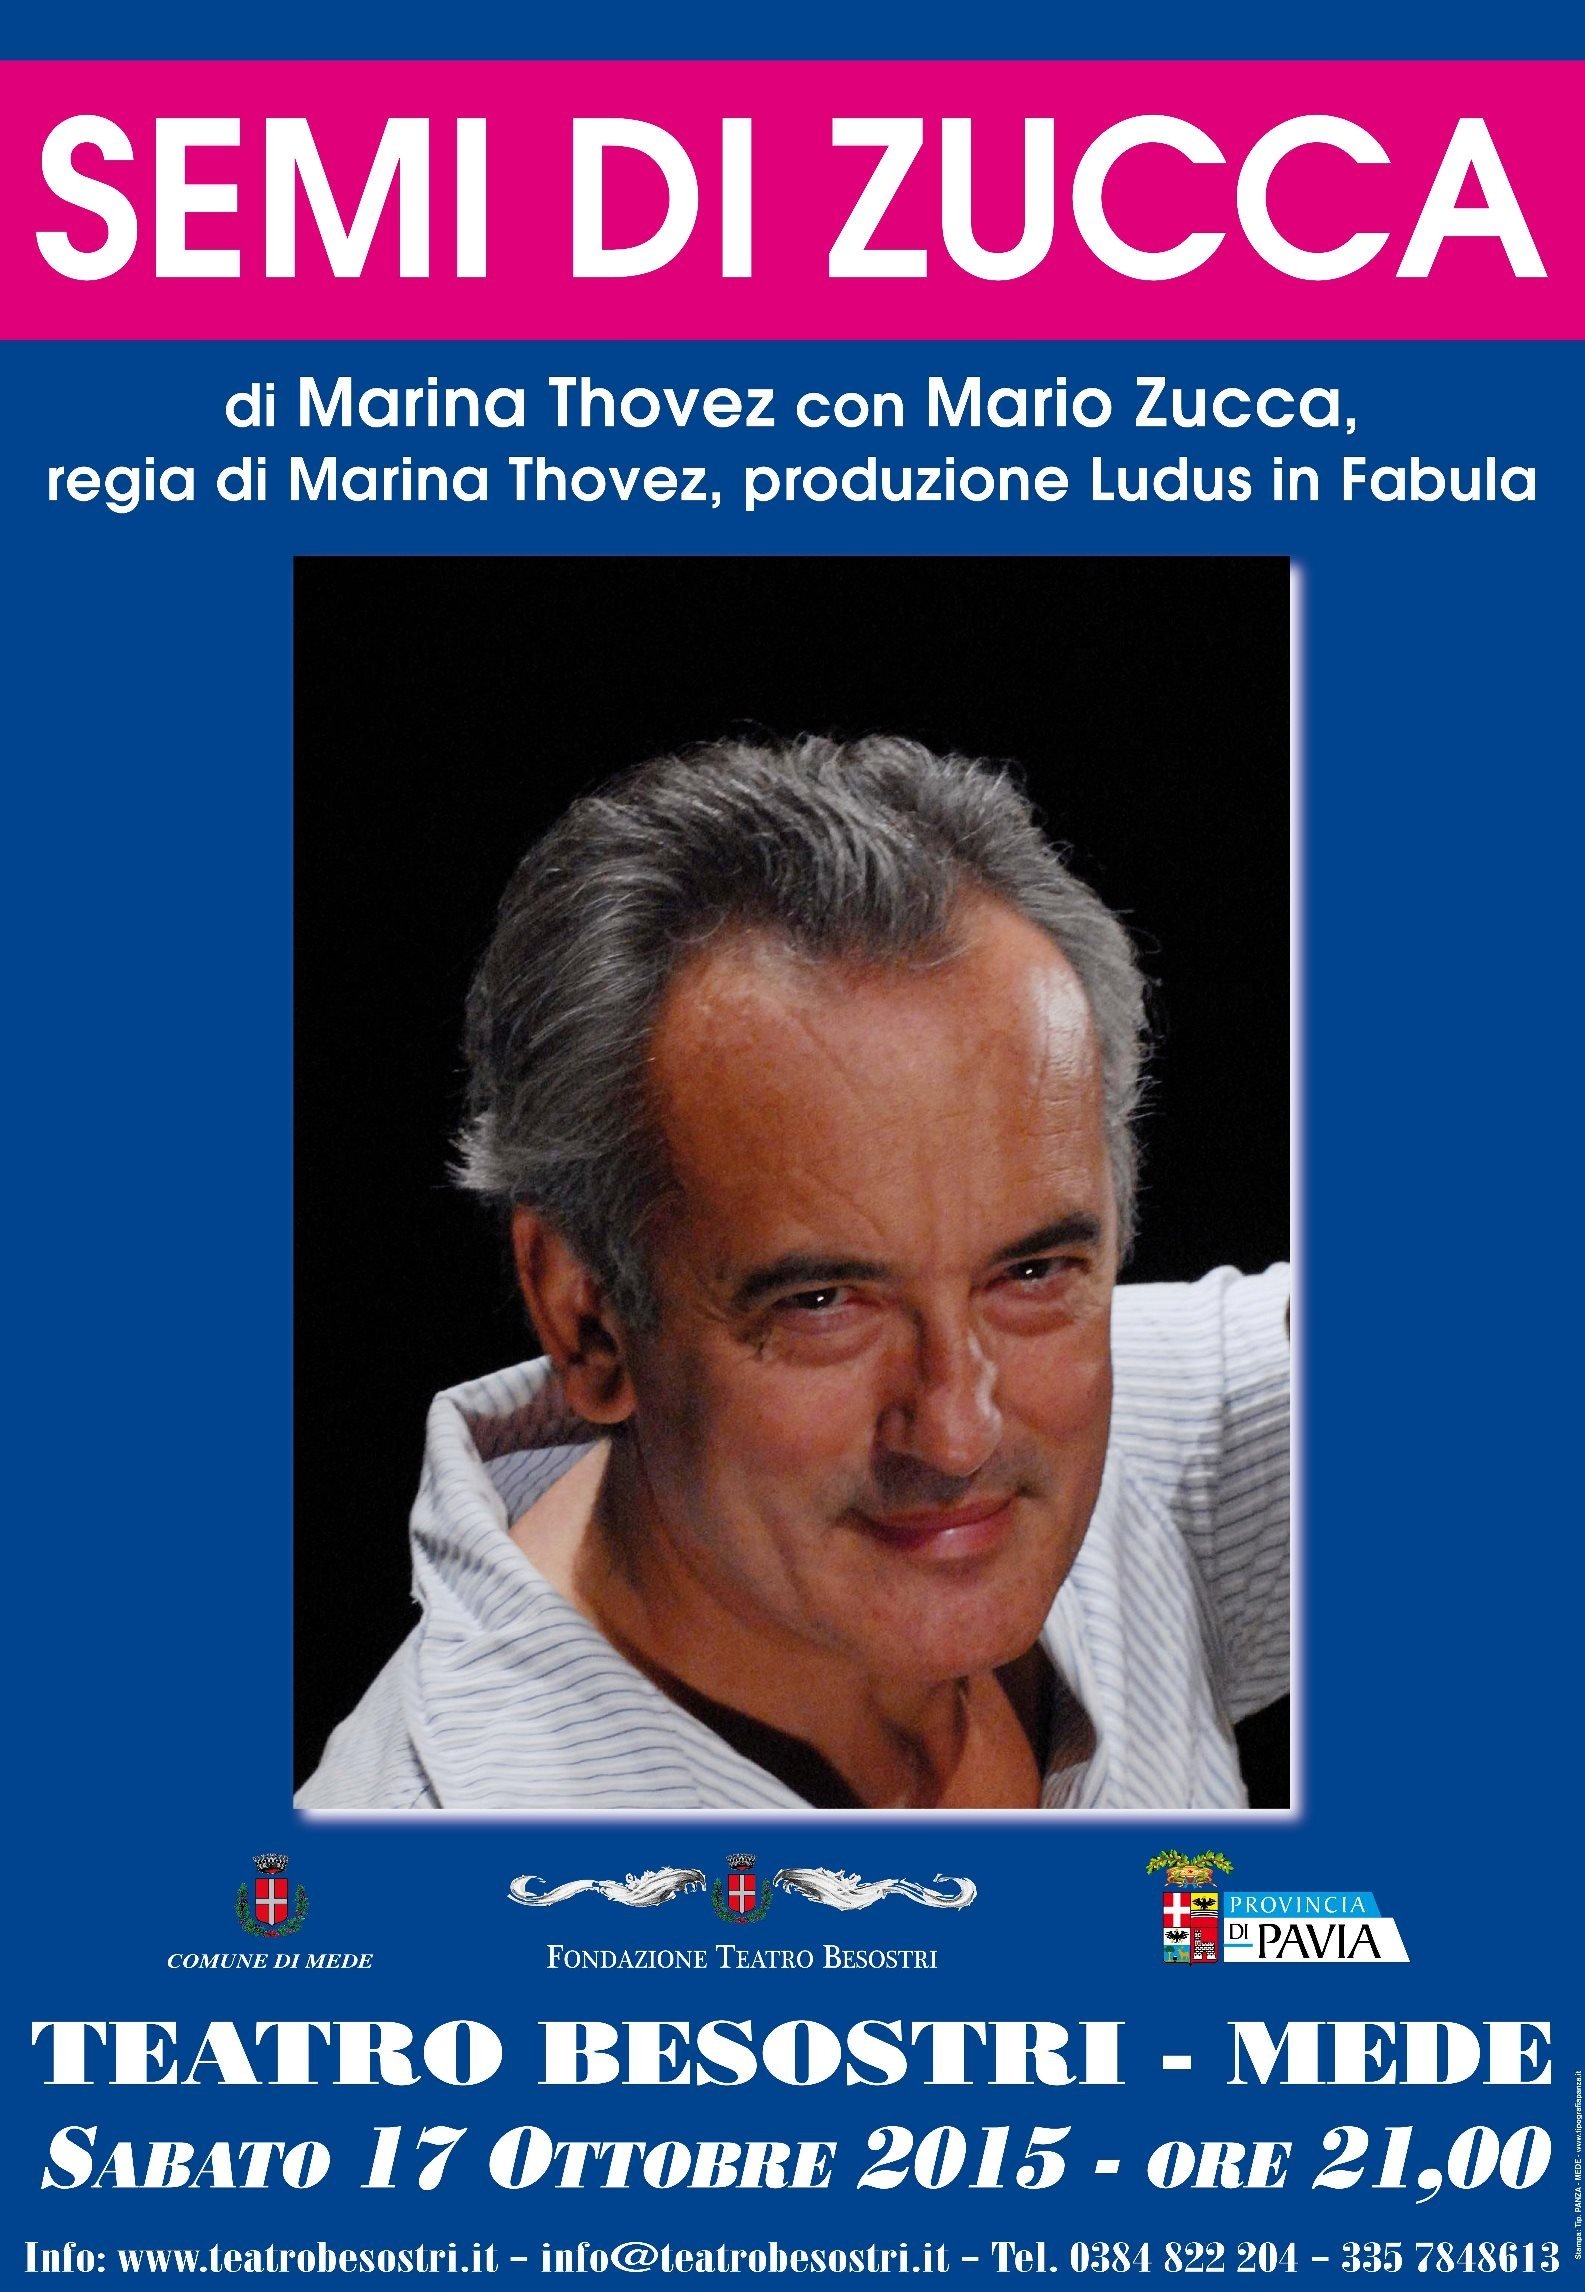 L’ironia dissacrante di Mario Zucca al Teatro Besostri di Mede